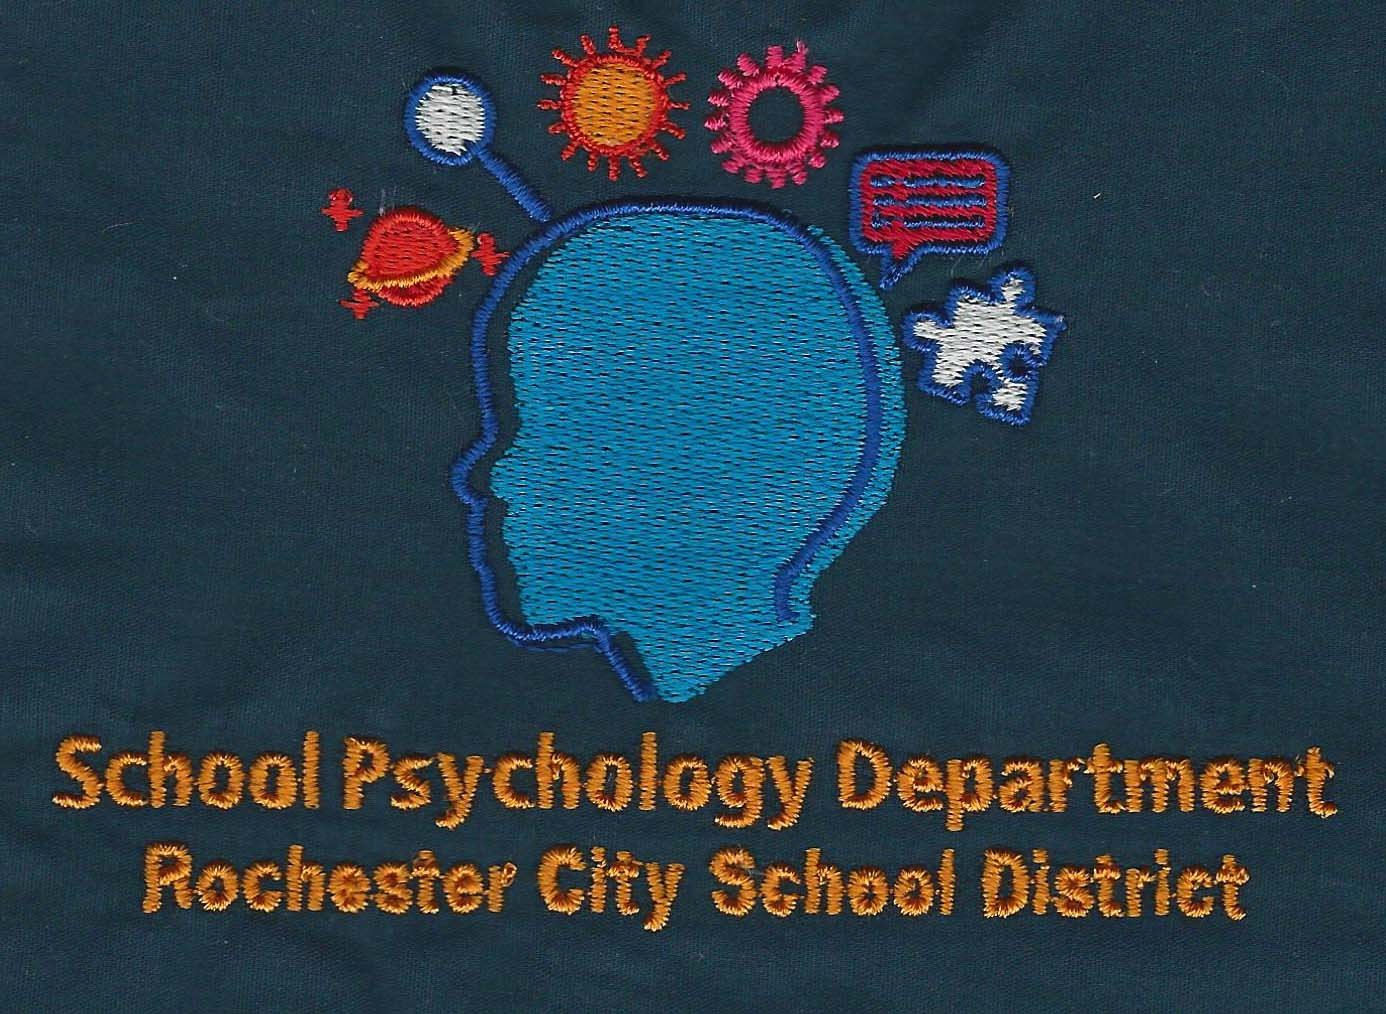 RCSD Psychology Department